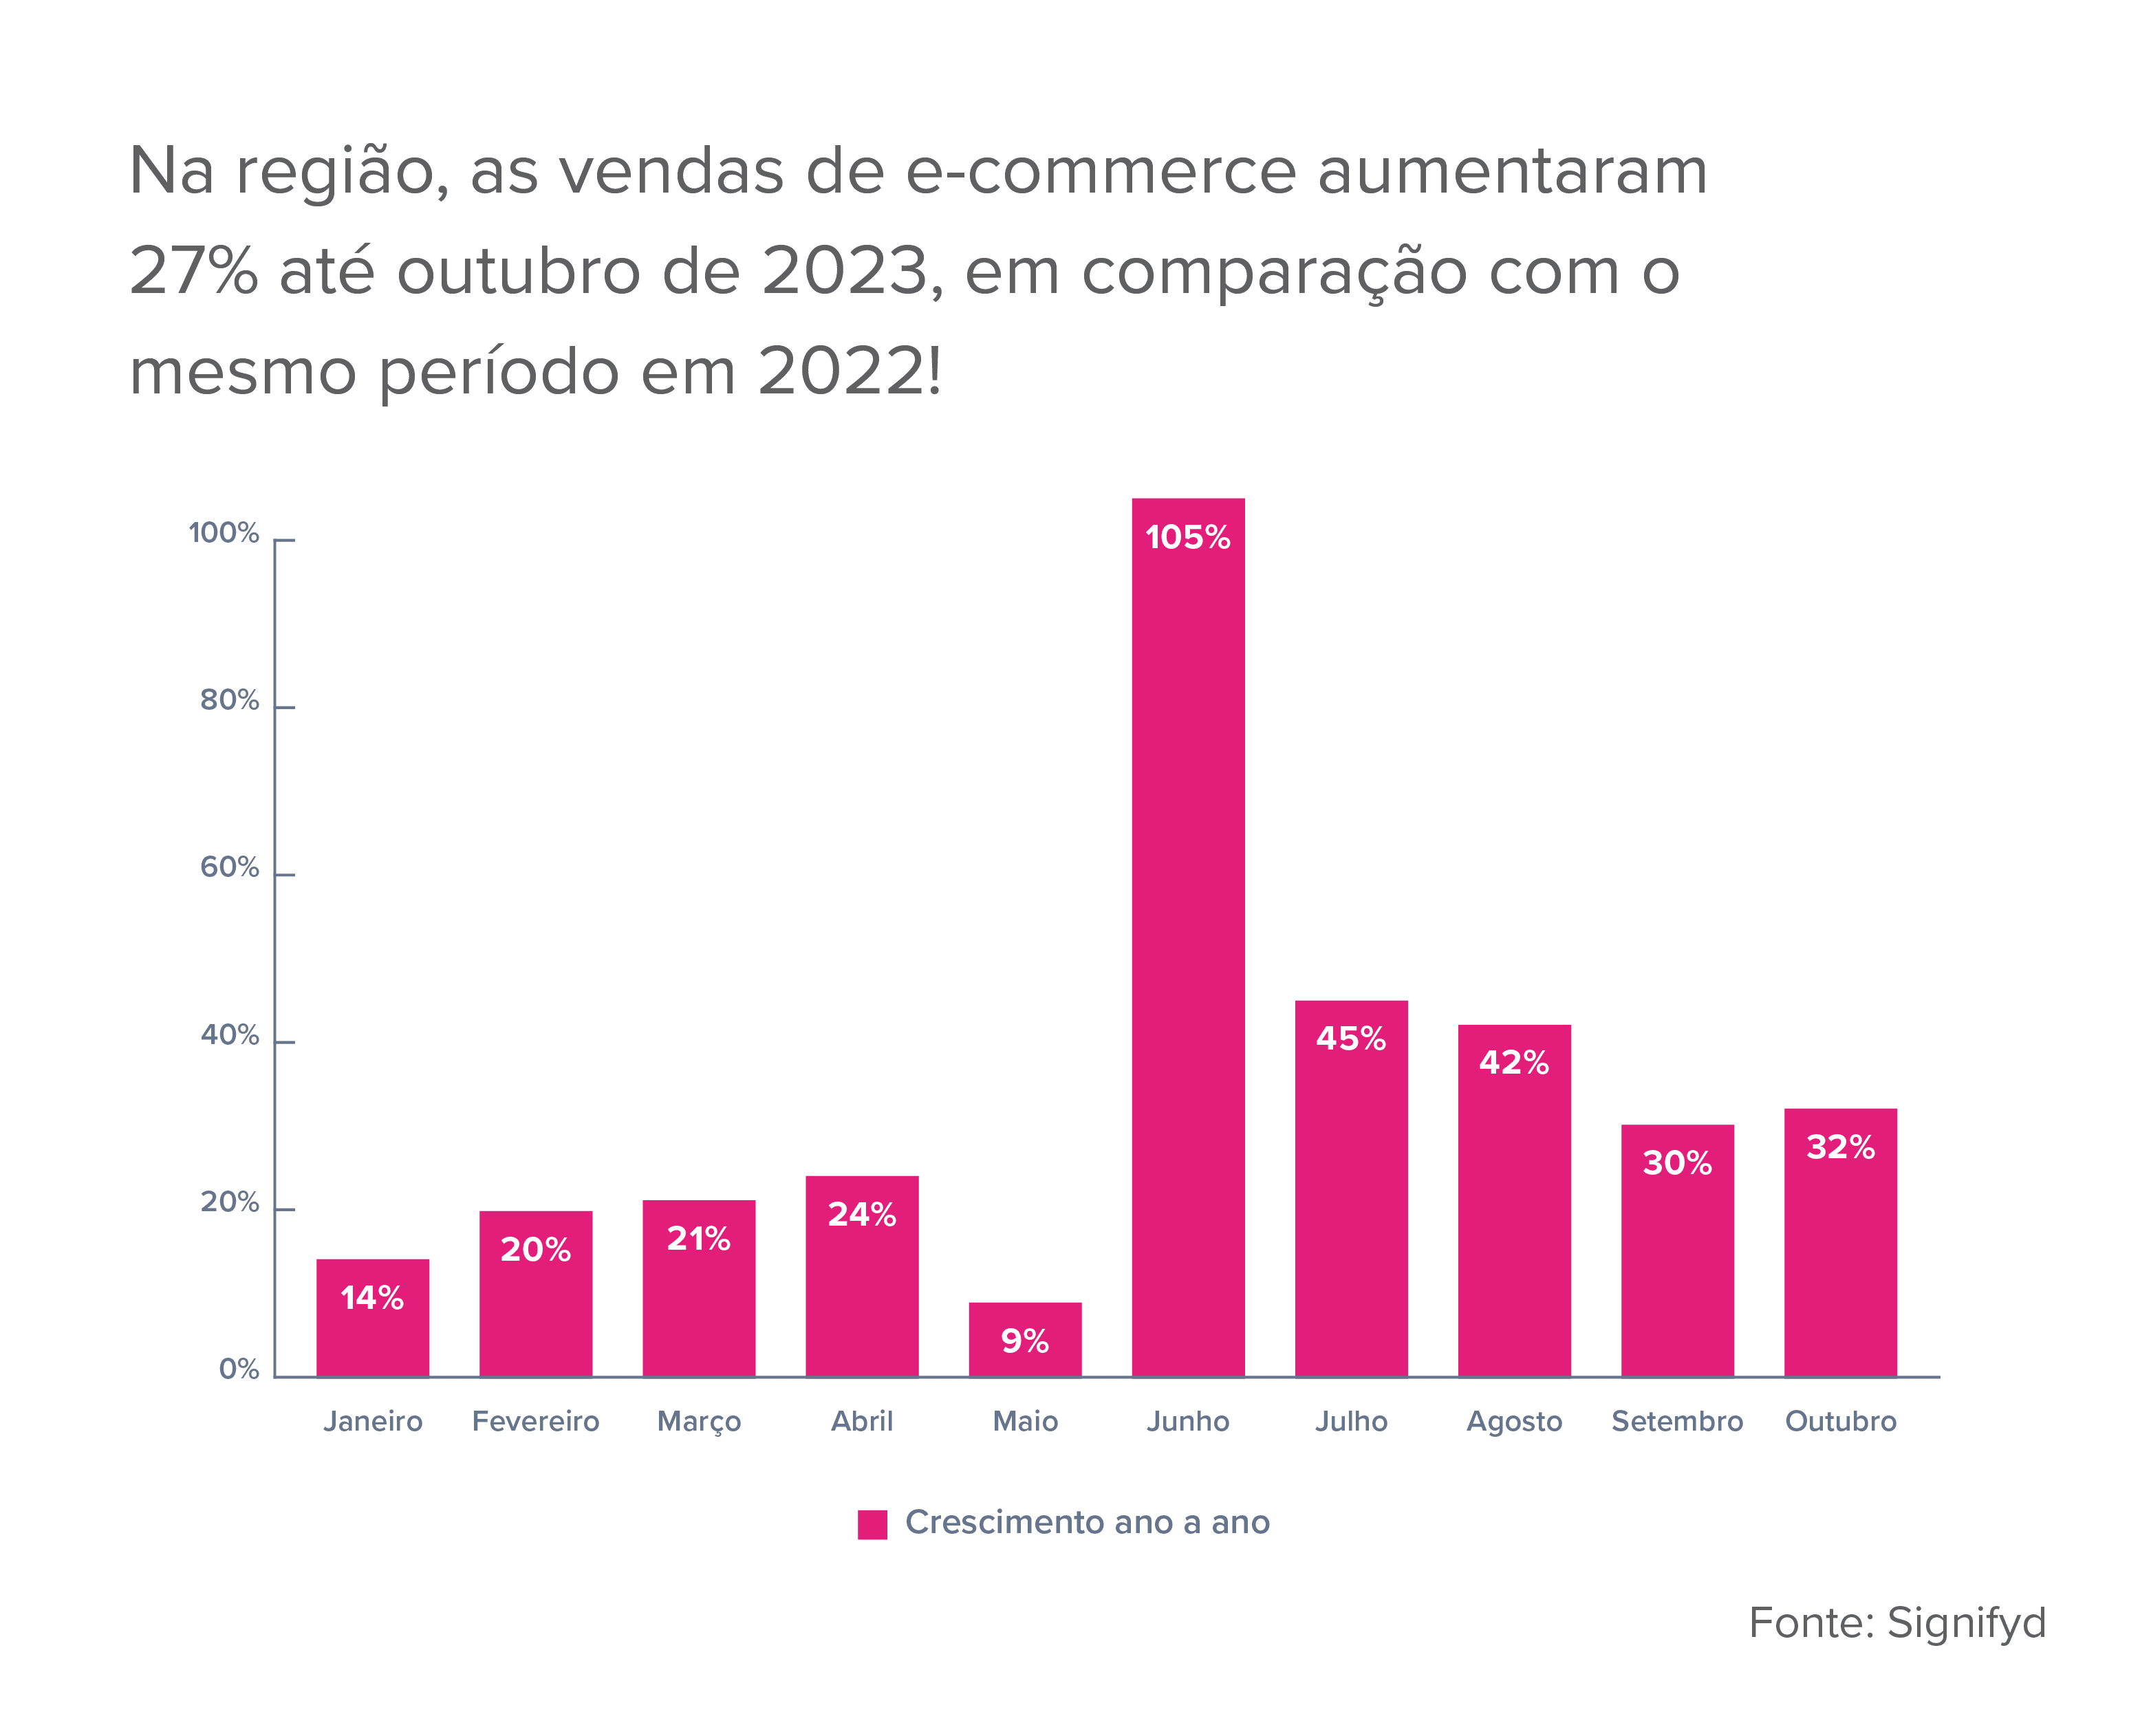 Na América Latina, as vendas de e-commerce aumentaram 27% até outubro de 2023, em comparação com o mesmo período em 2022